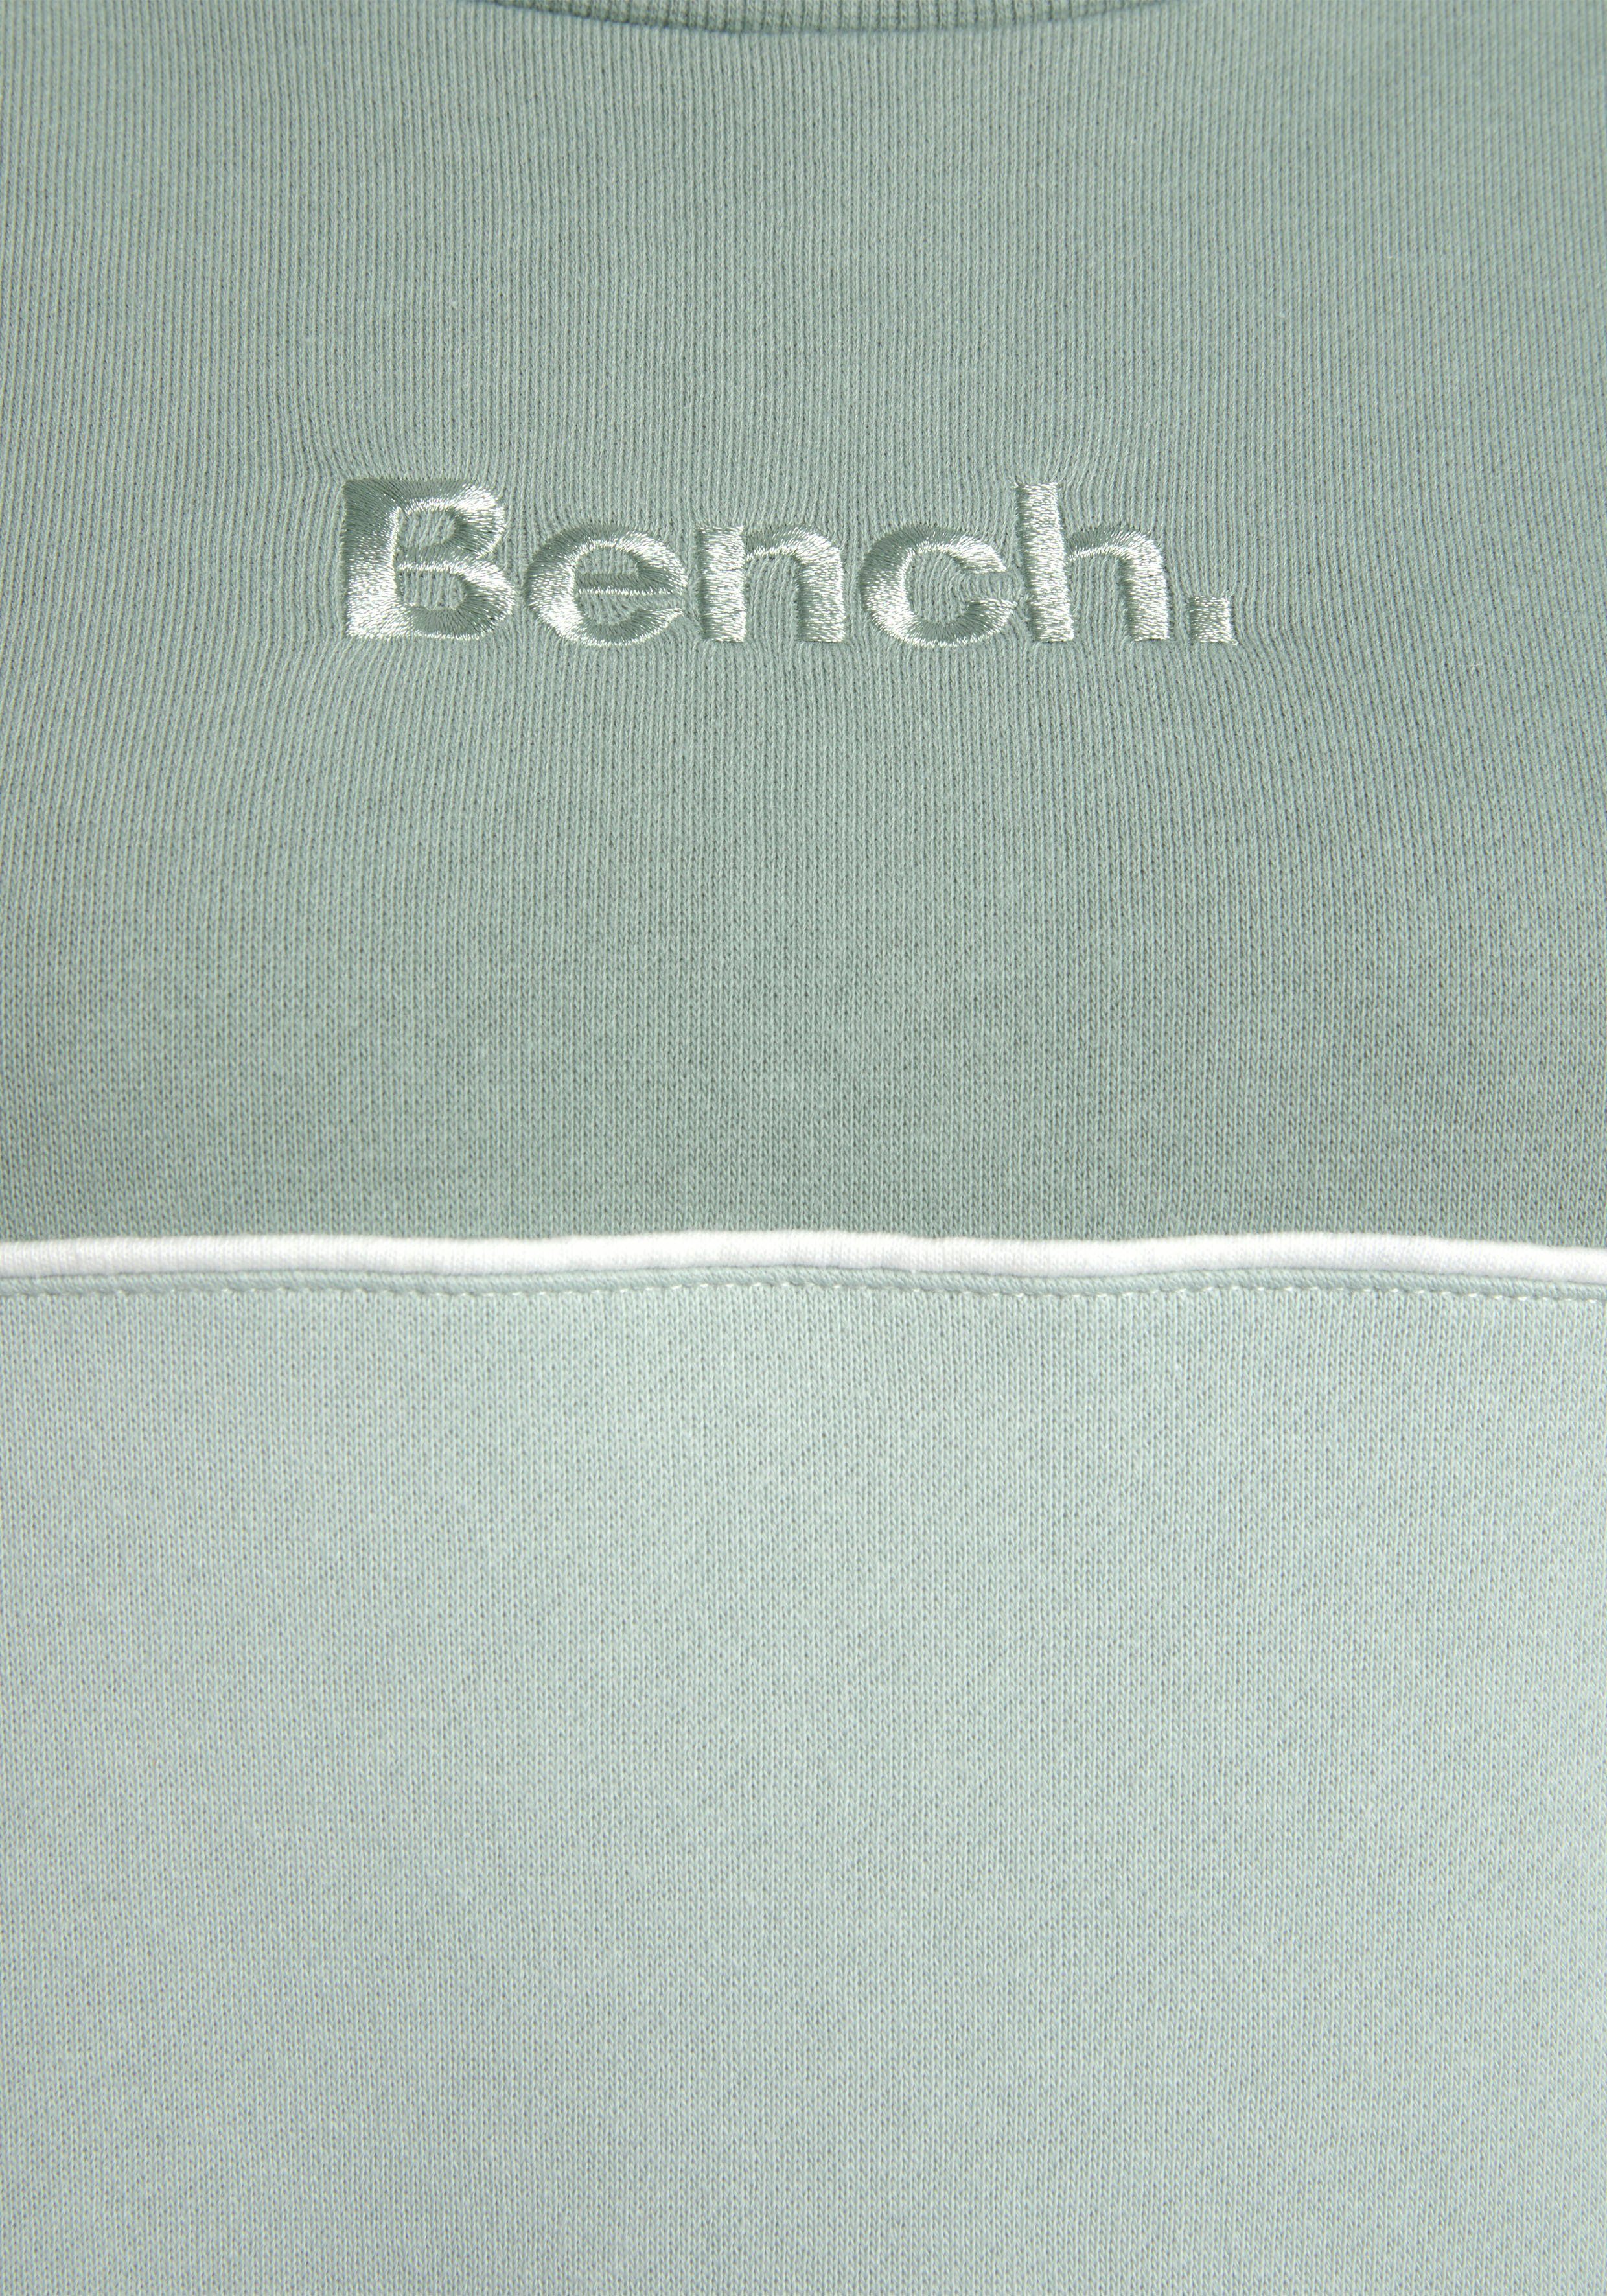 Logostickerei mit Sweatkleid zwei Bench. in Farben grün-graugrün